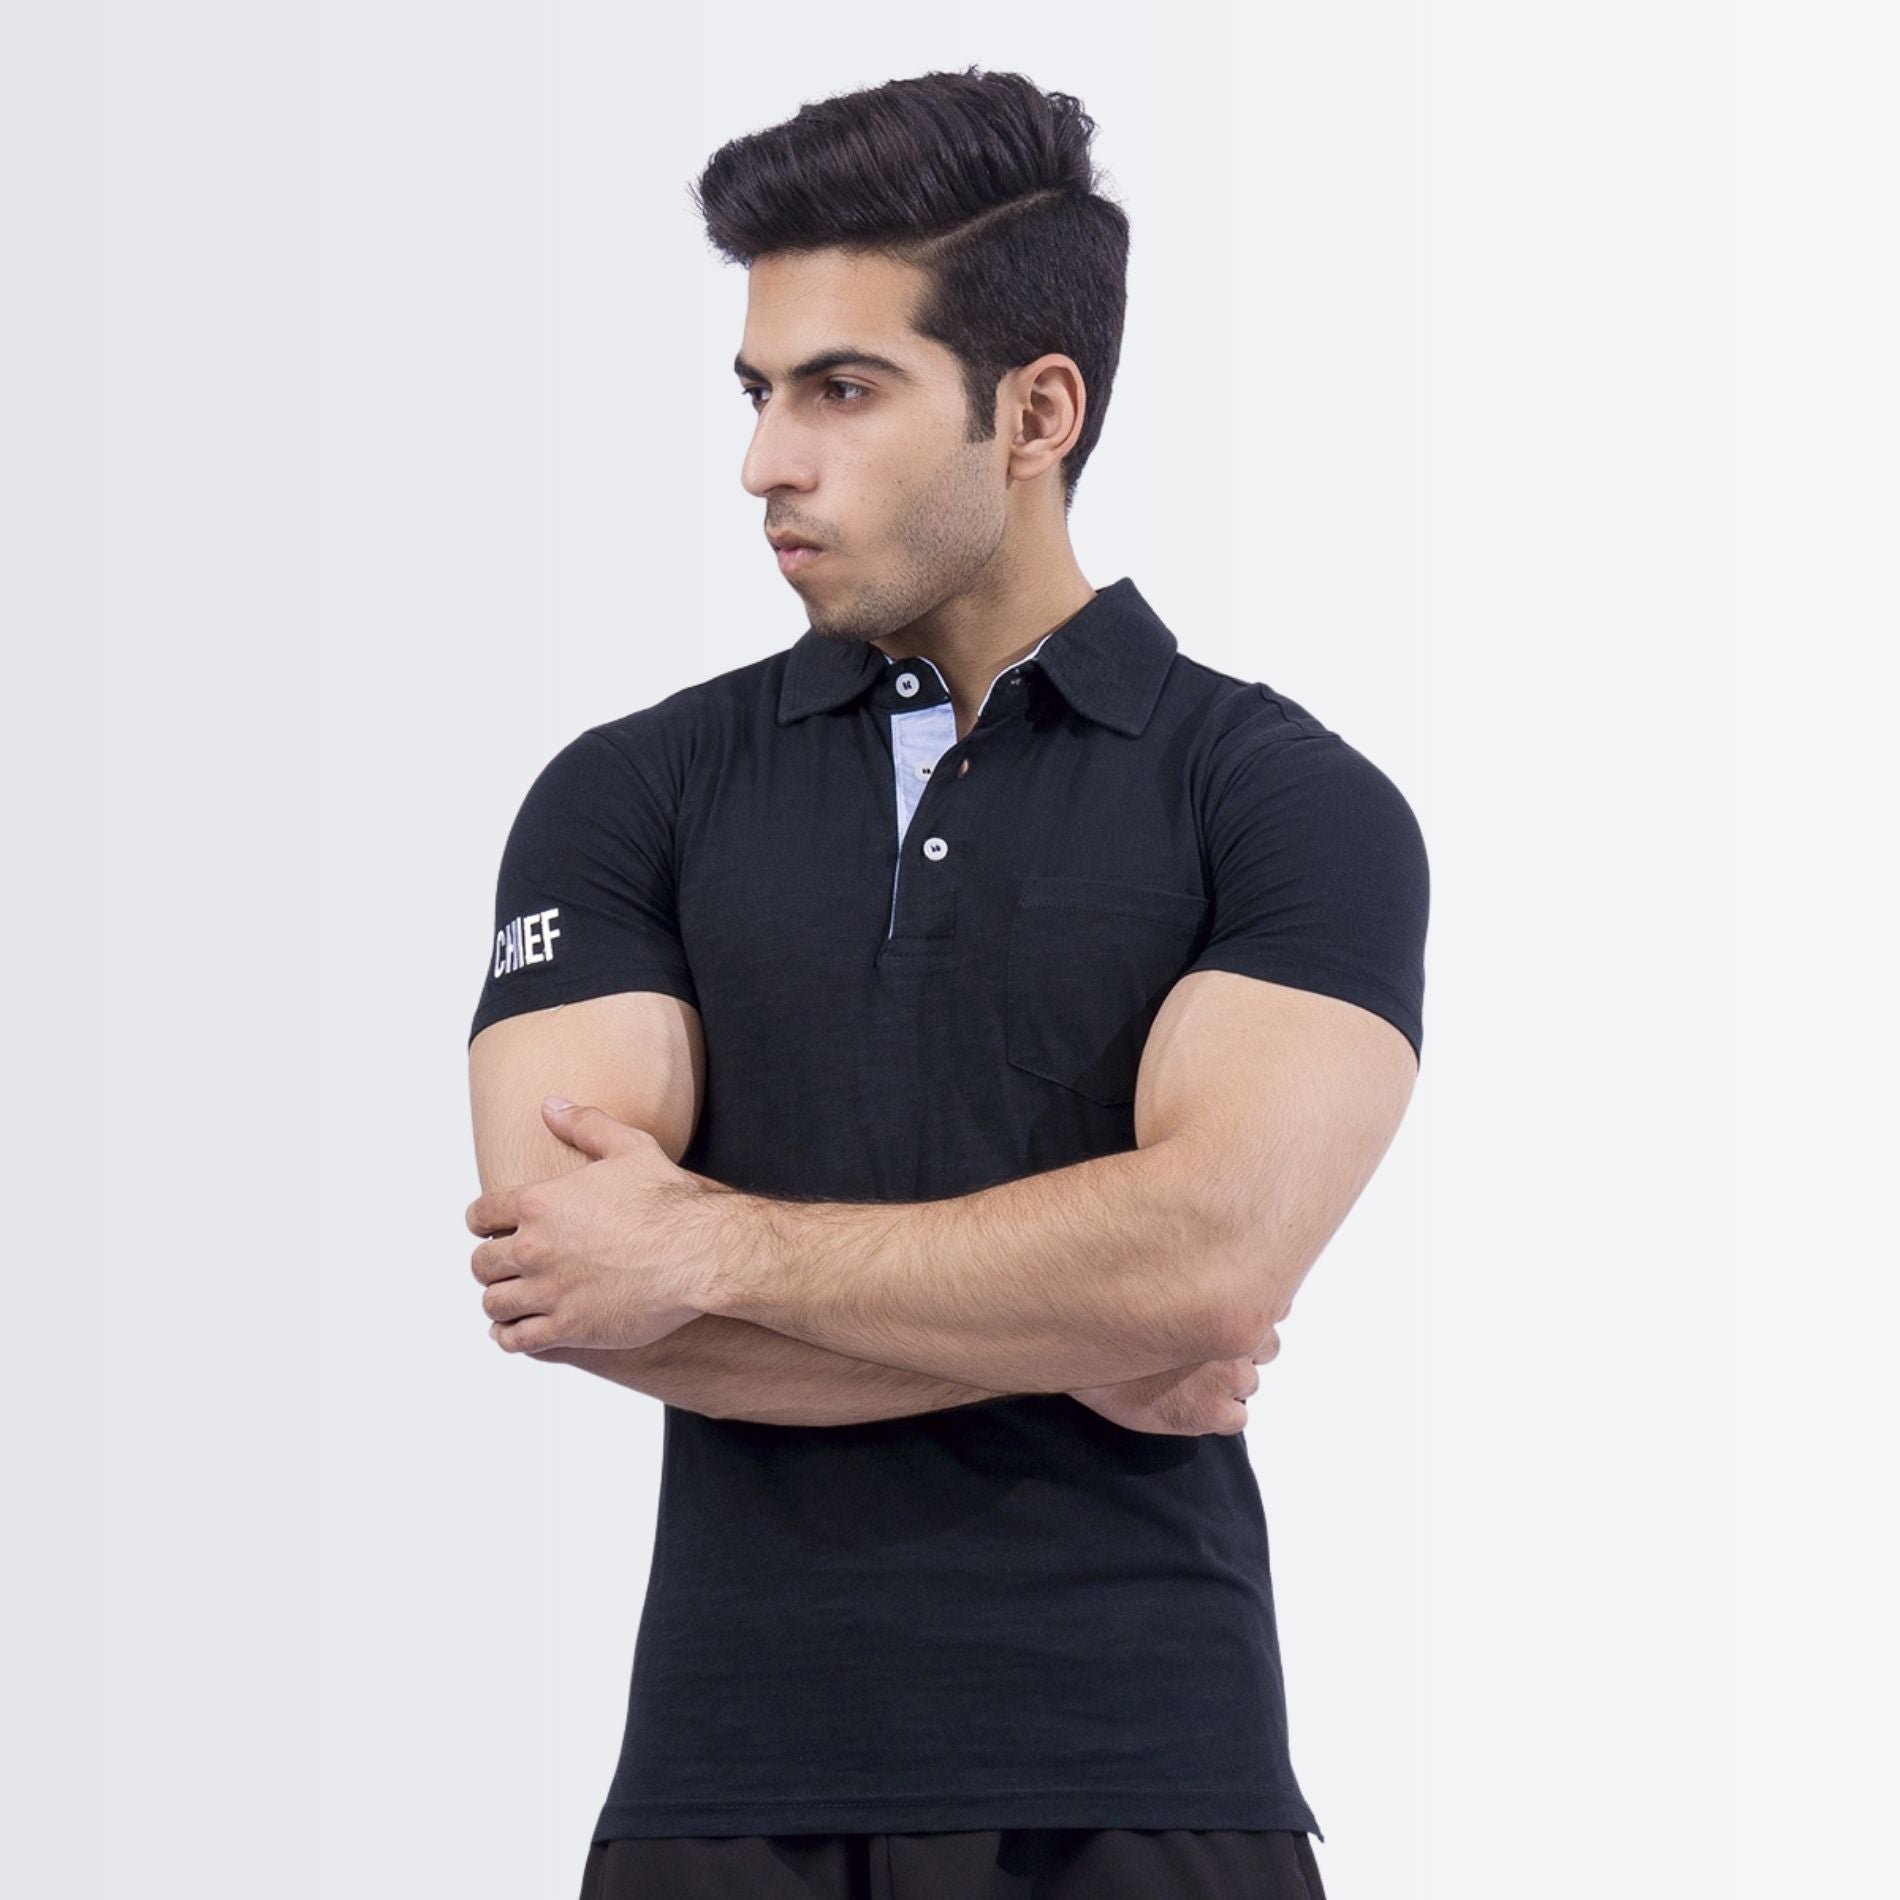 Stylish Black Polo Shirt